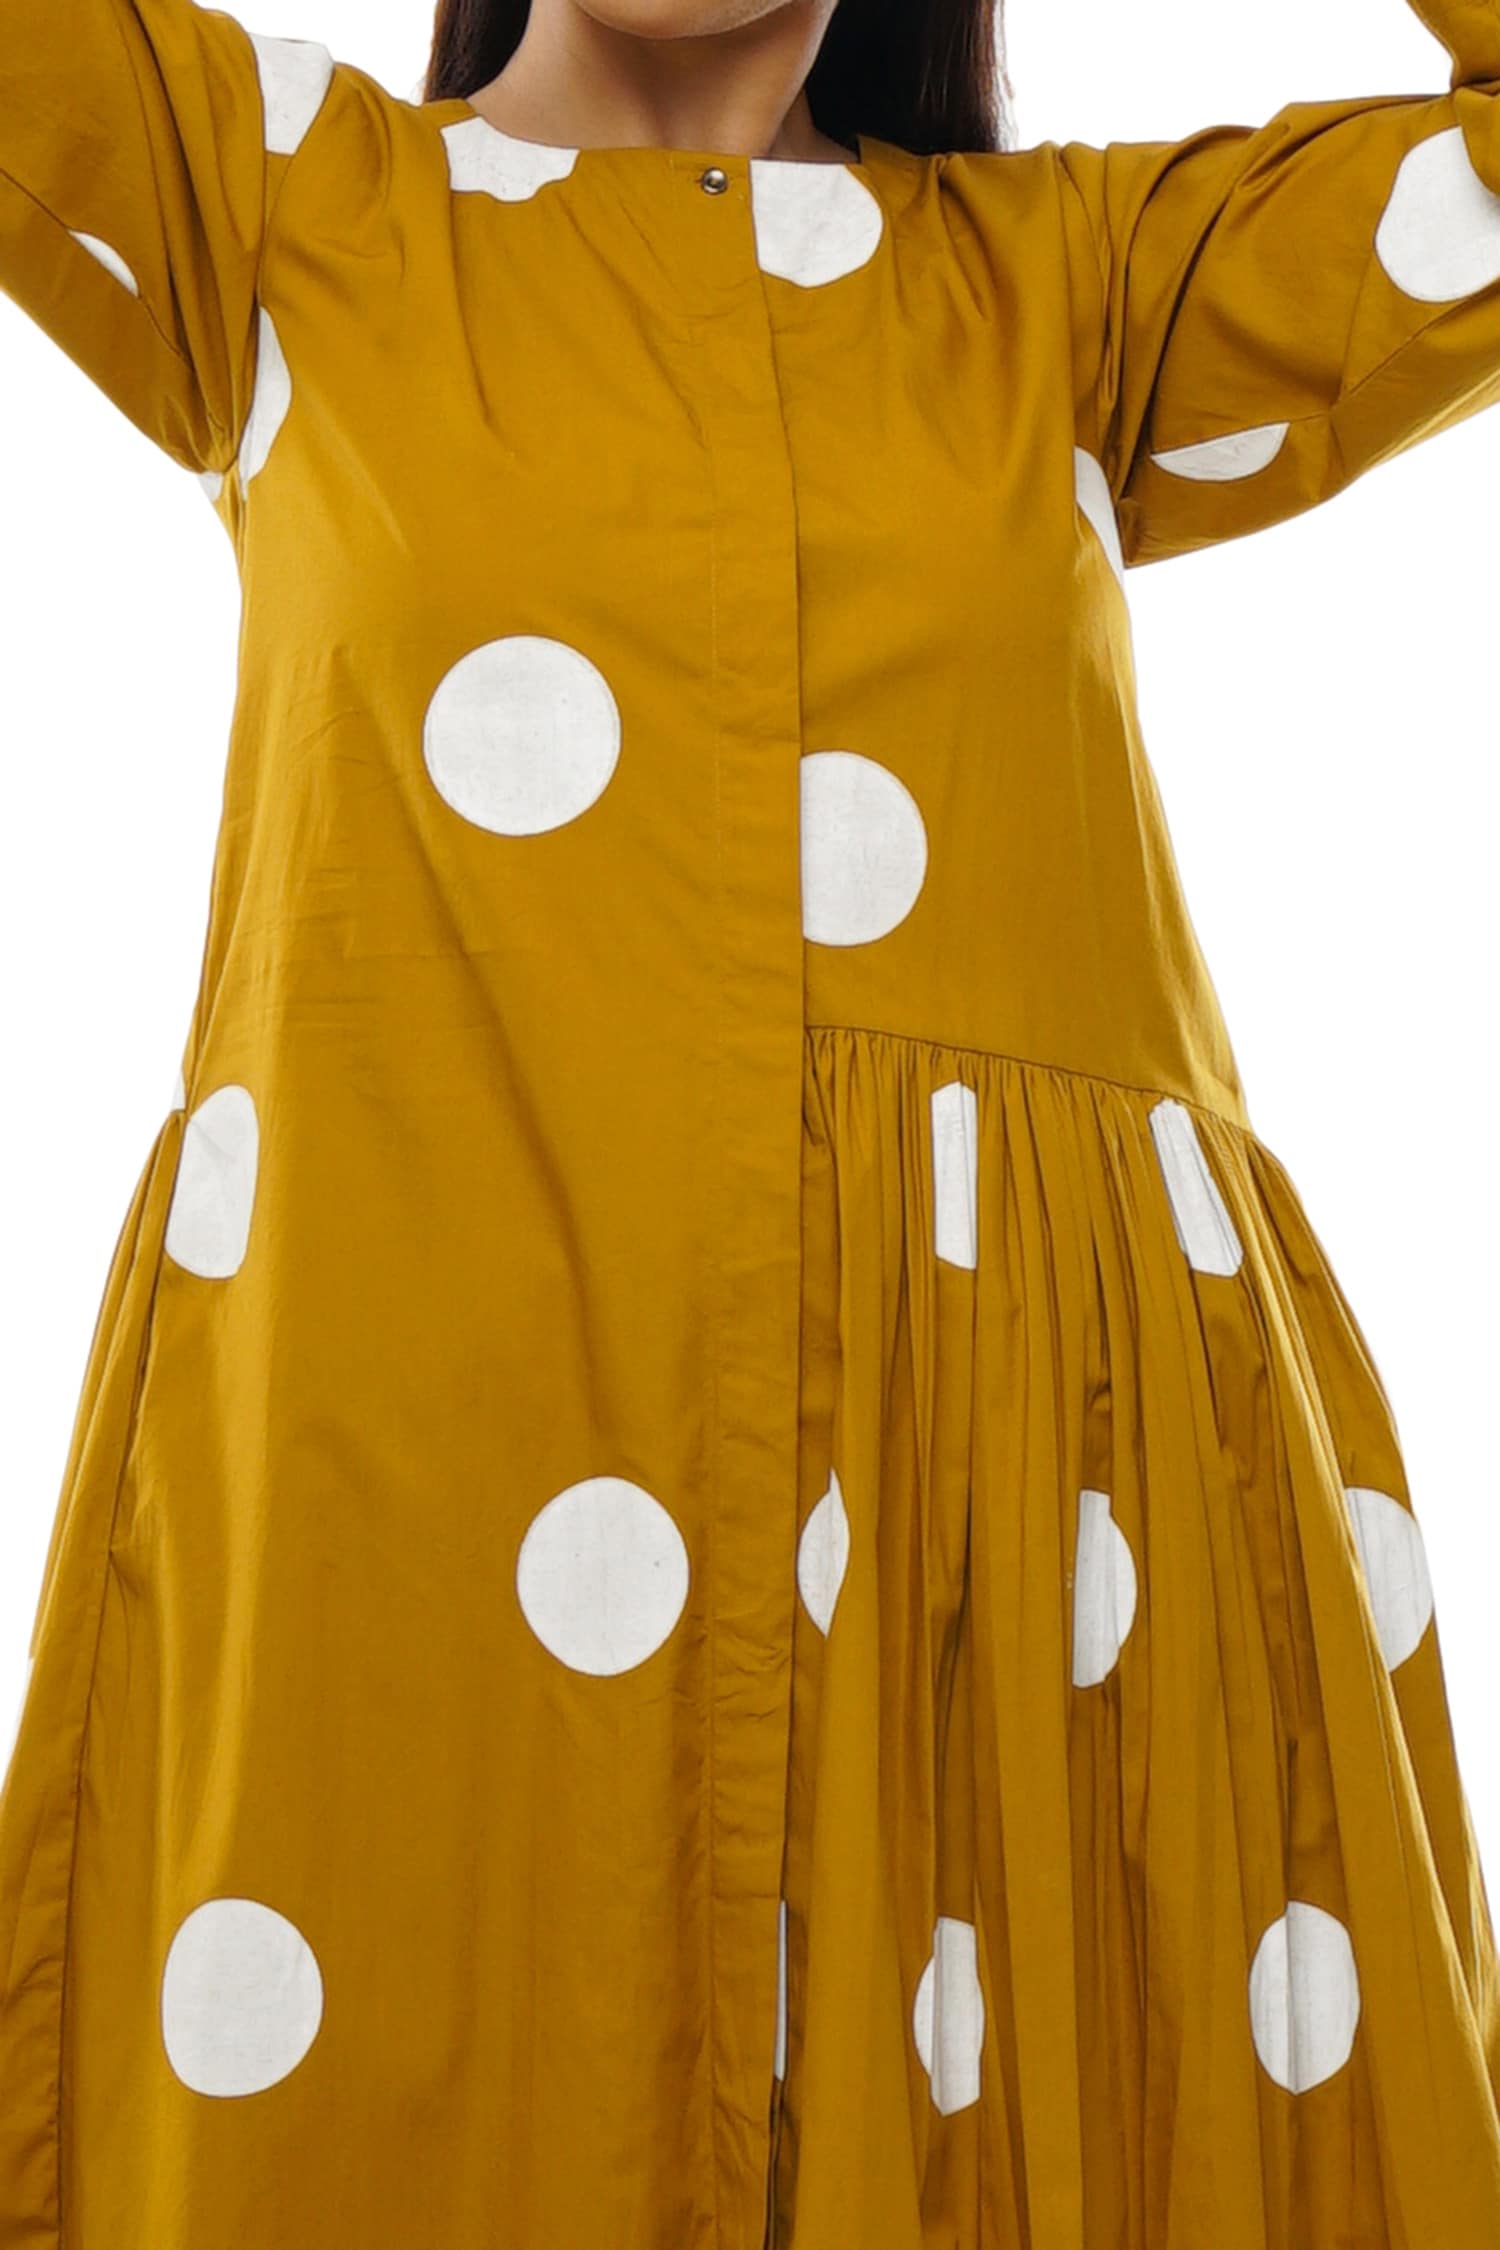 Buy Yellow Dresses for Women by Wabii Online | Ajio.com